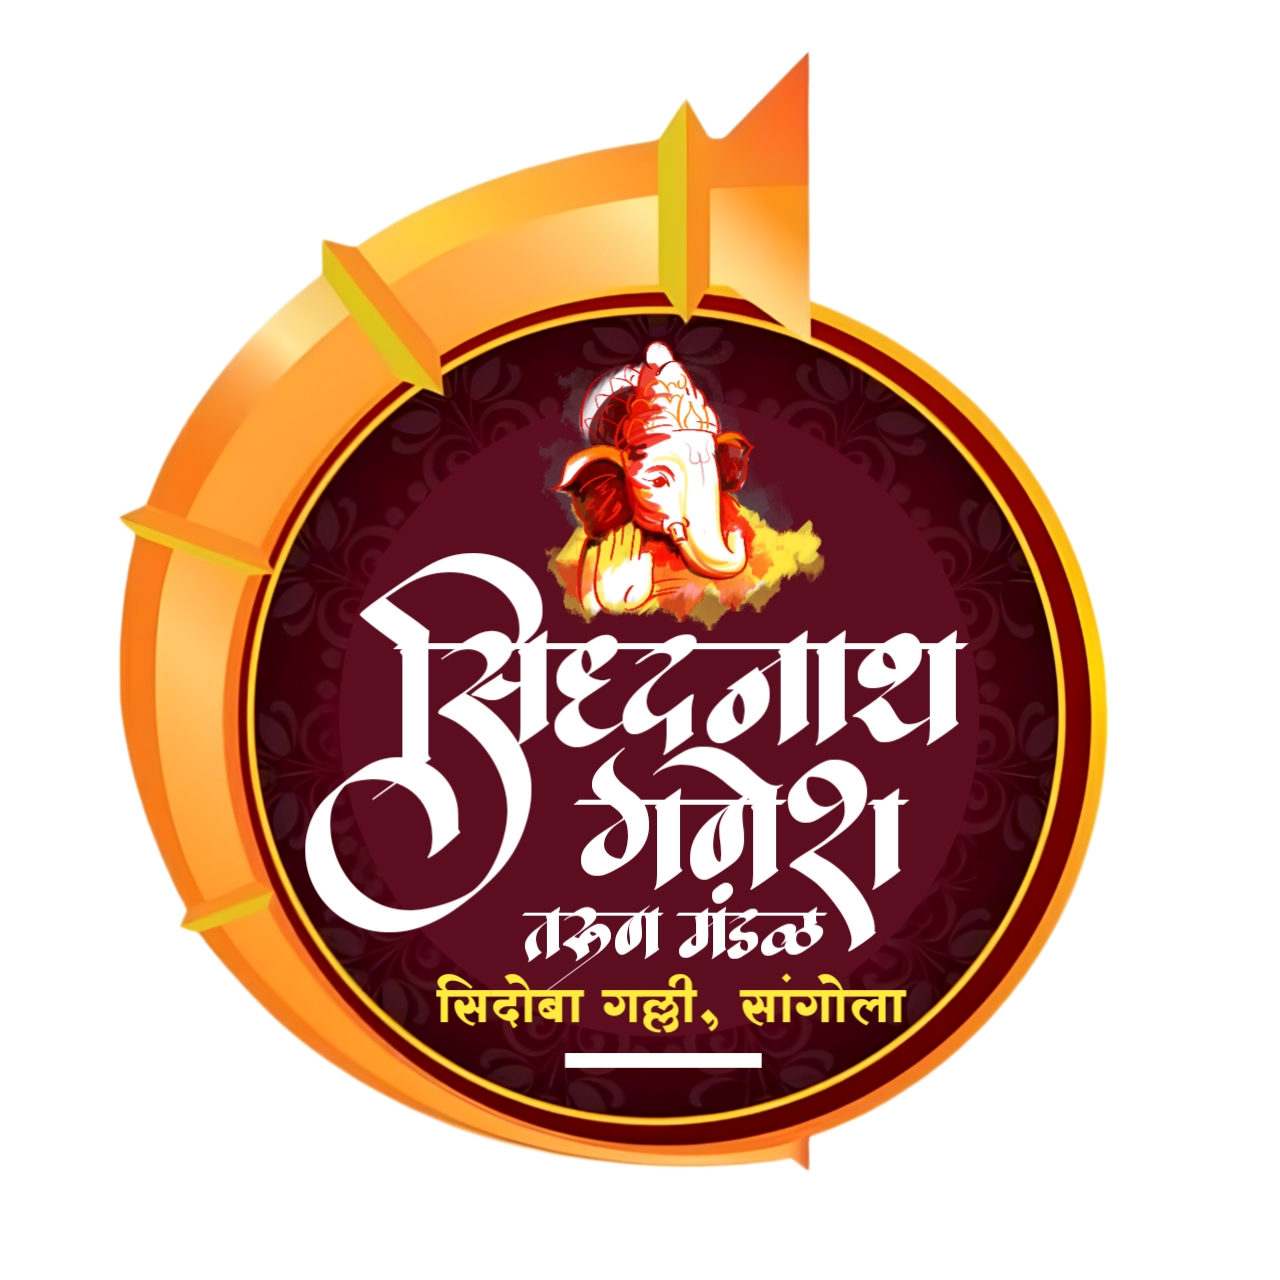 Ganesh Chaturthi 2021 Ganesh Chaturthi PNG Image Download Free